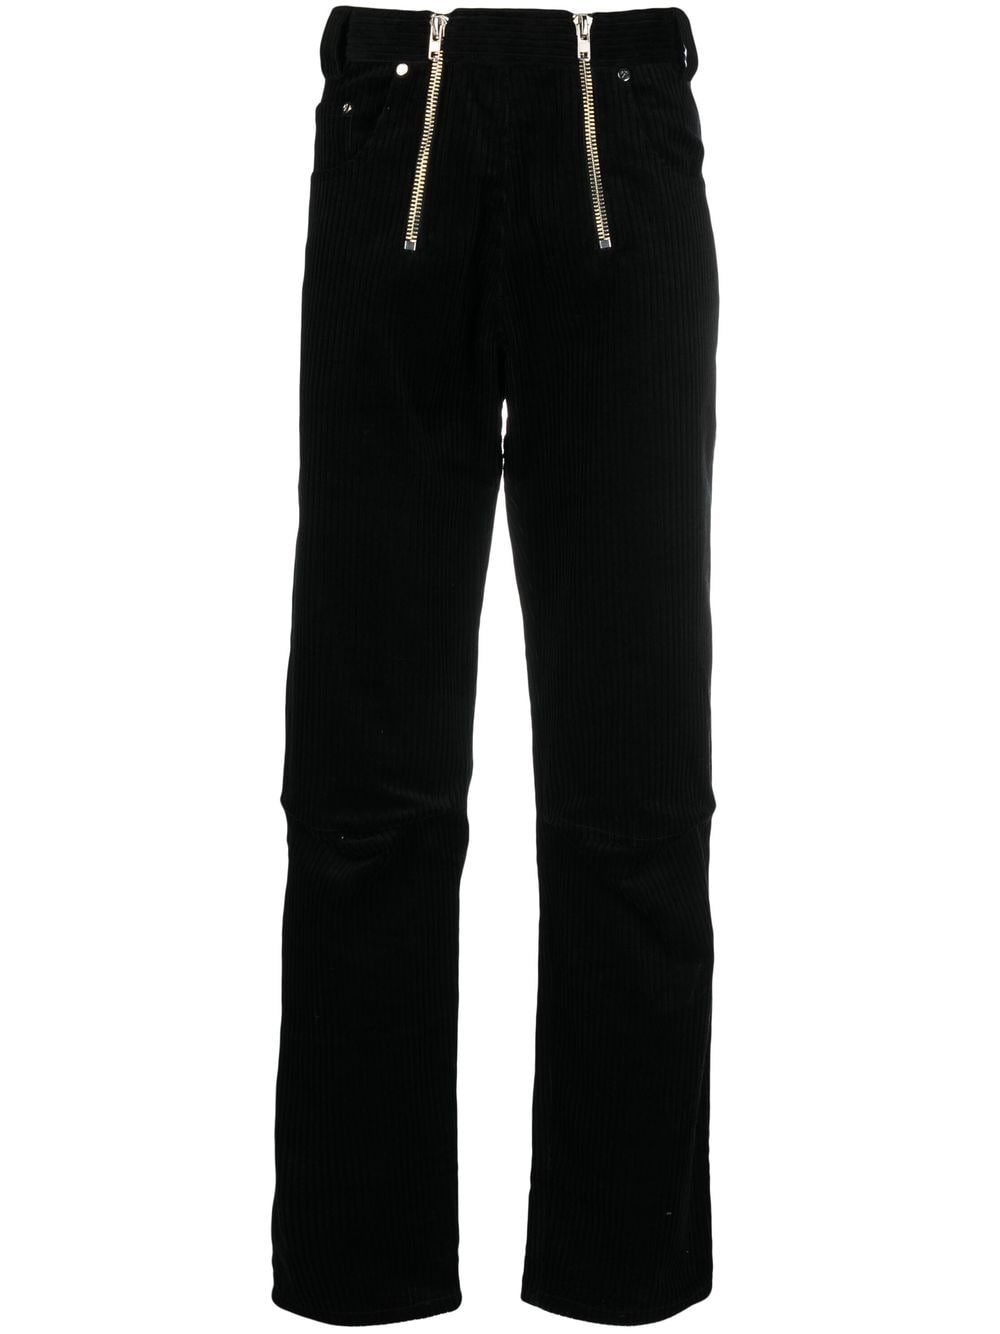 Image 1 of GmbH pantalones rectos con doble cierre